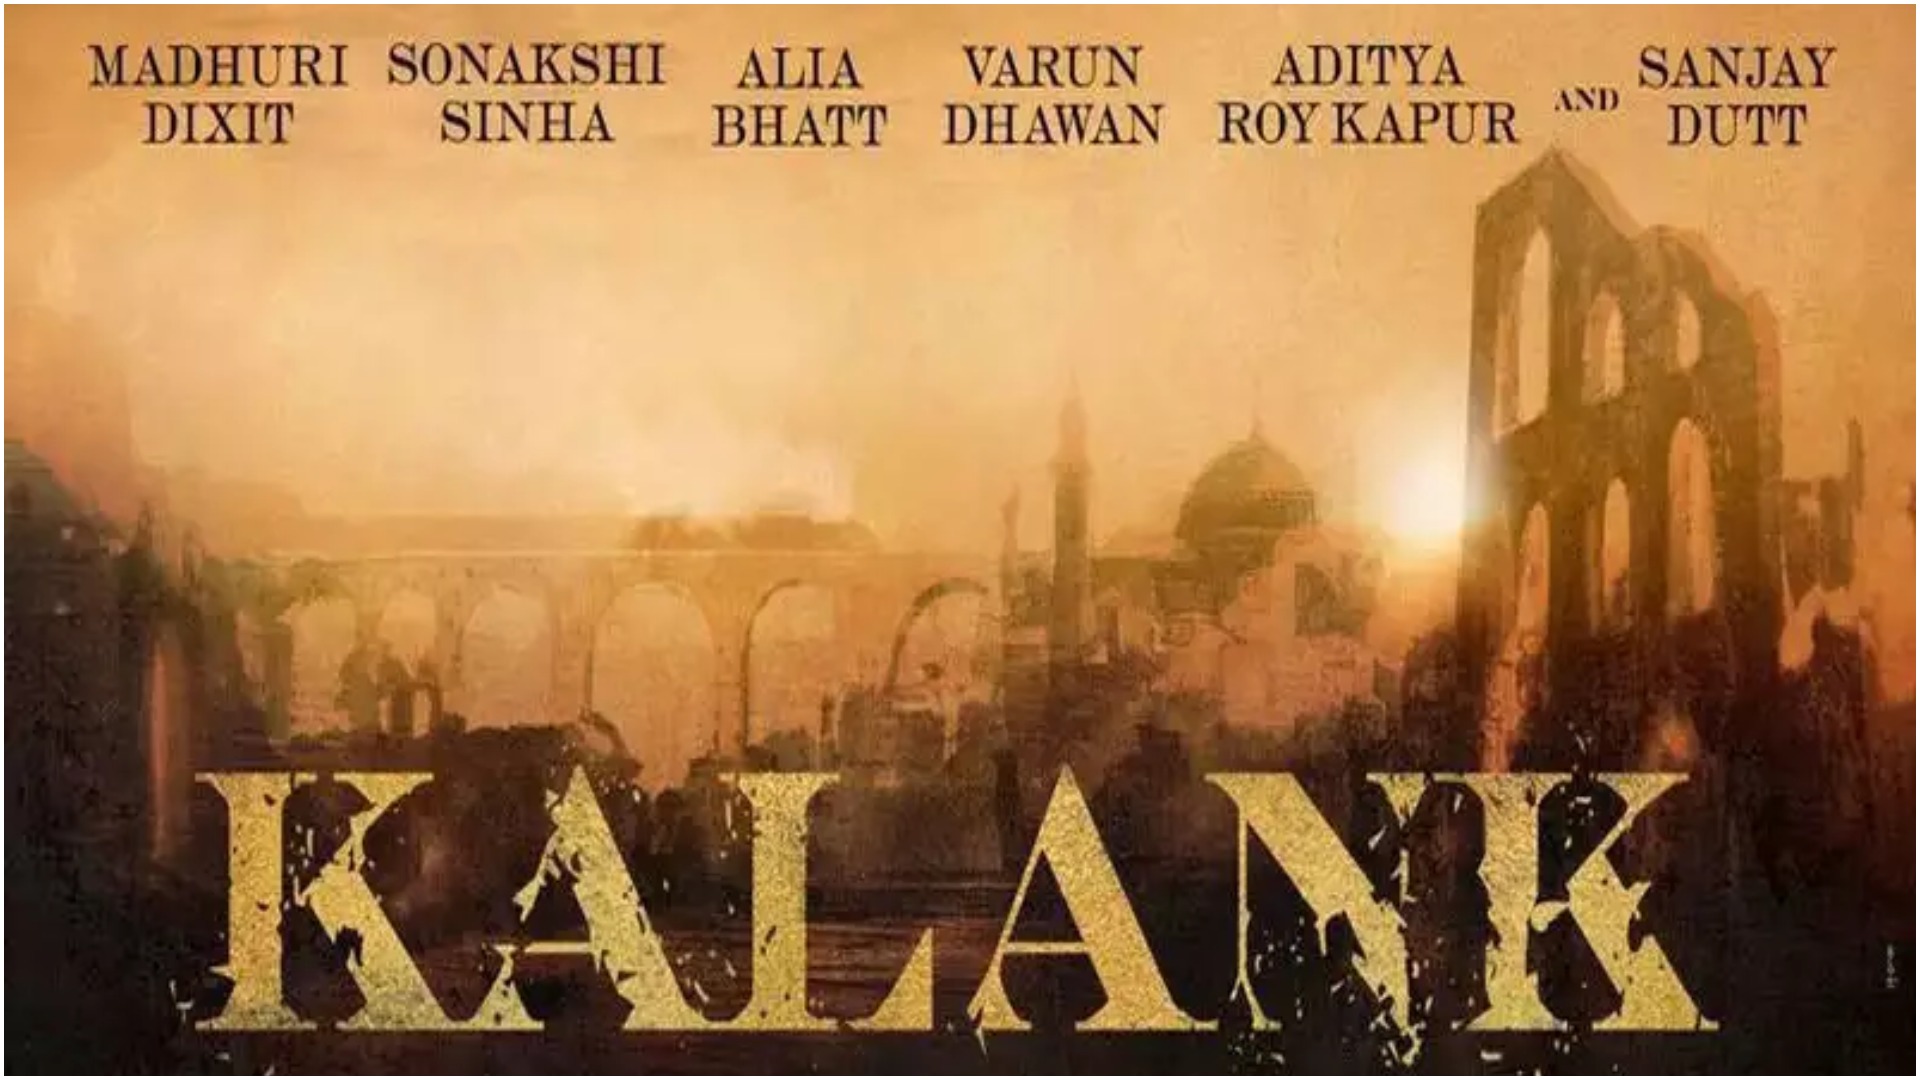 Kalank poster